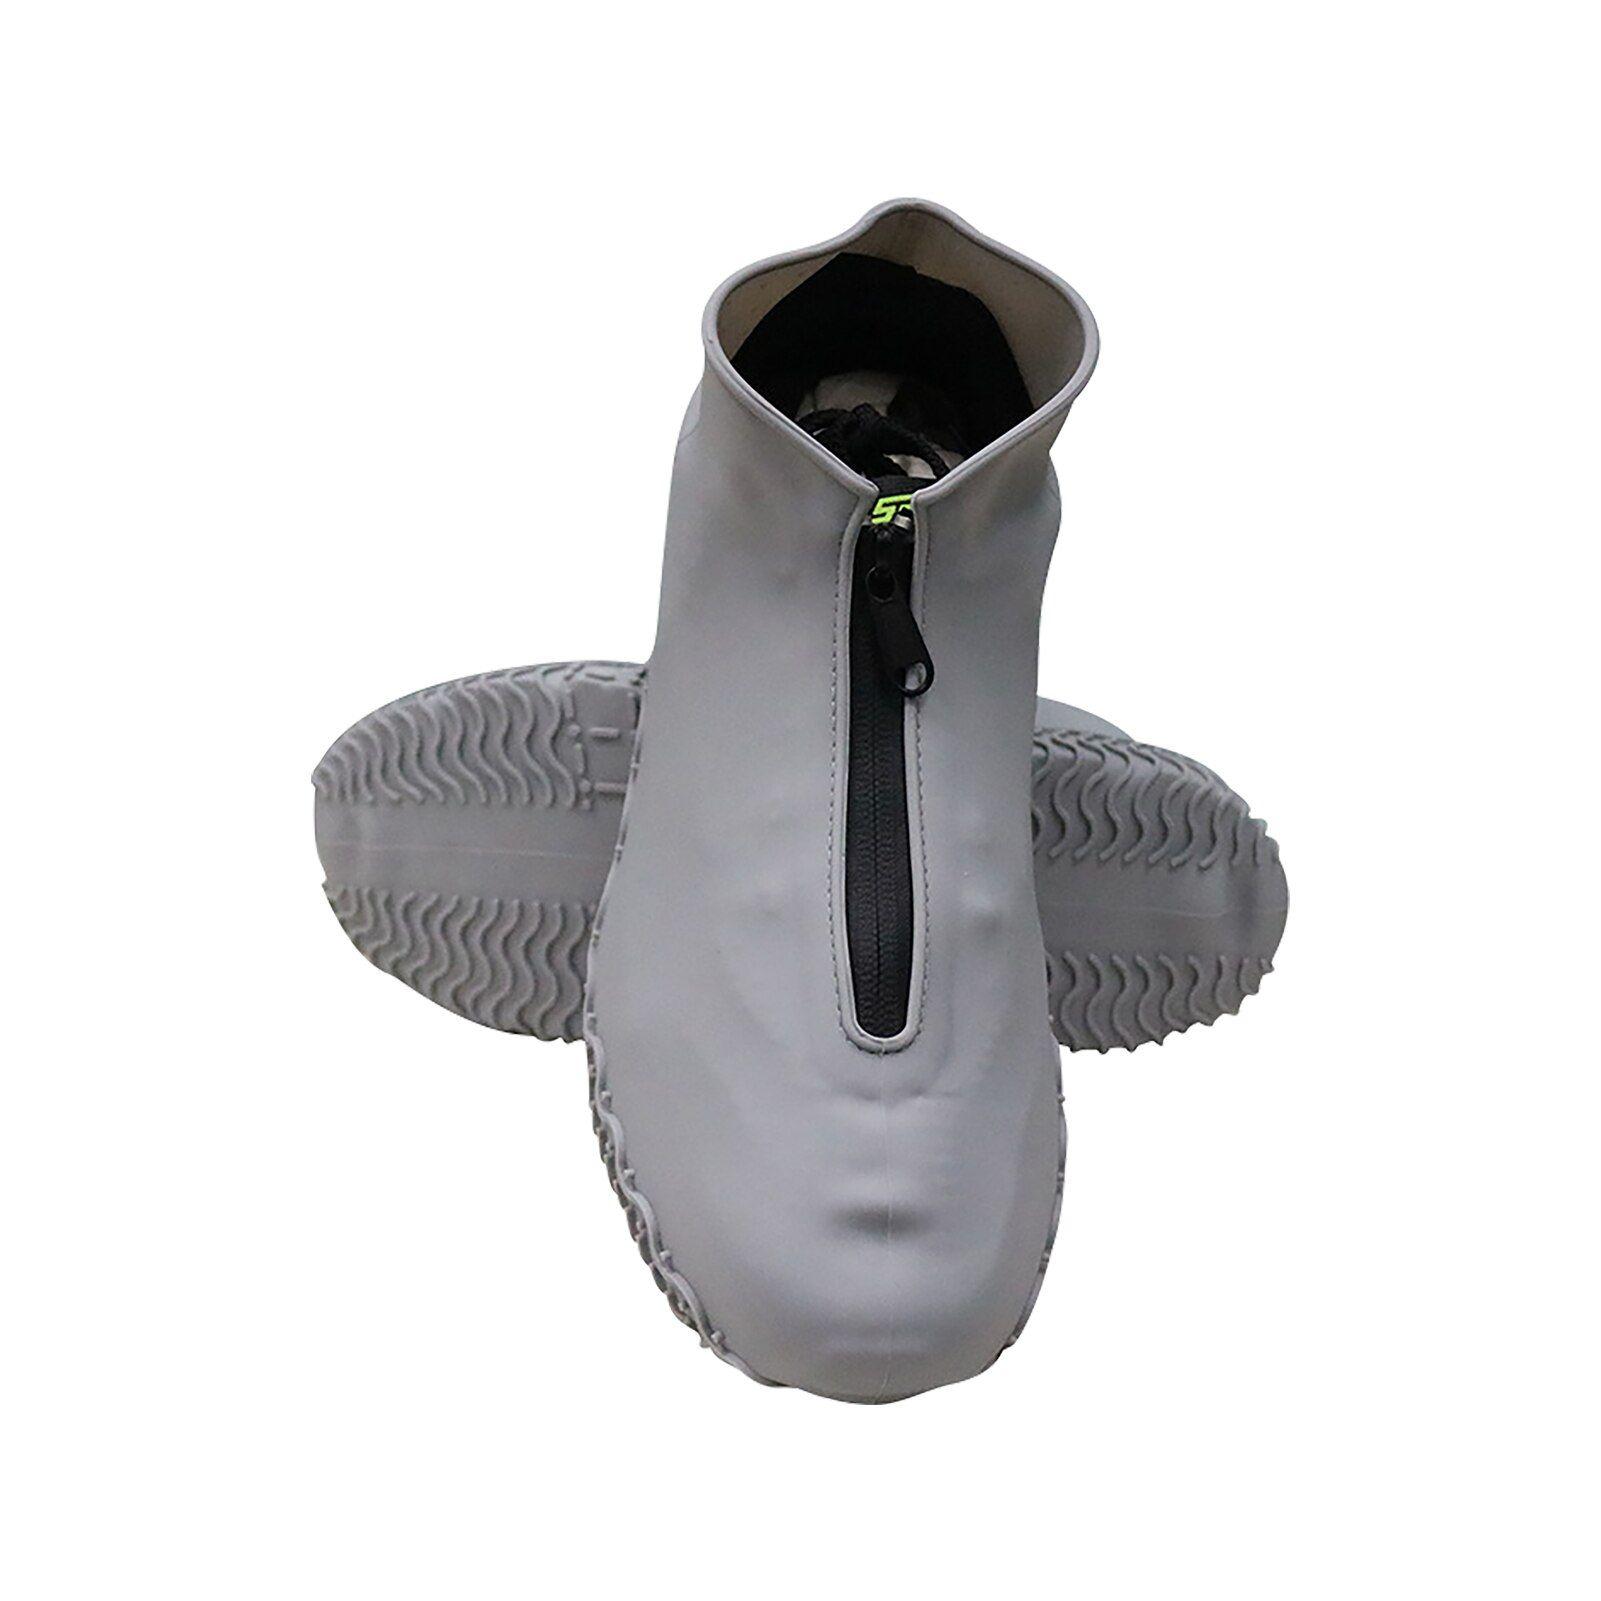 Couvre-chaussures imperméables en silicone - Pliable et réutilisable - Avec  fermeture éclair - Protège-chaussures de pluie pour